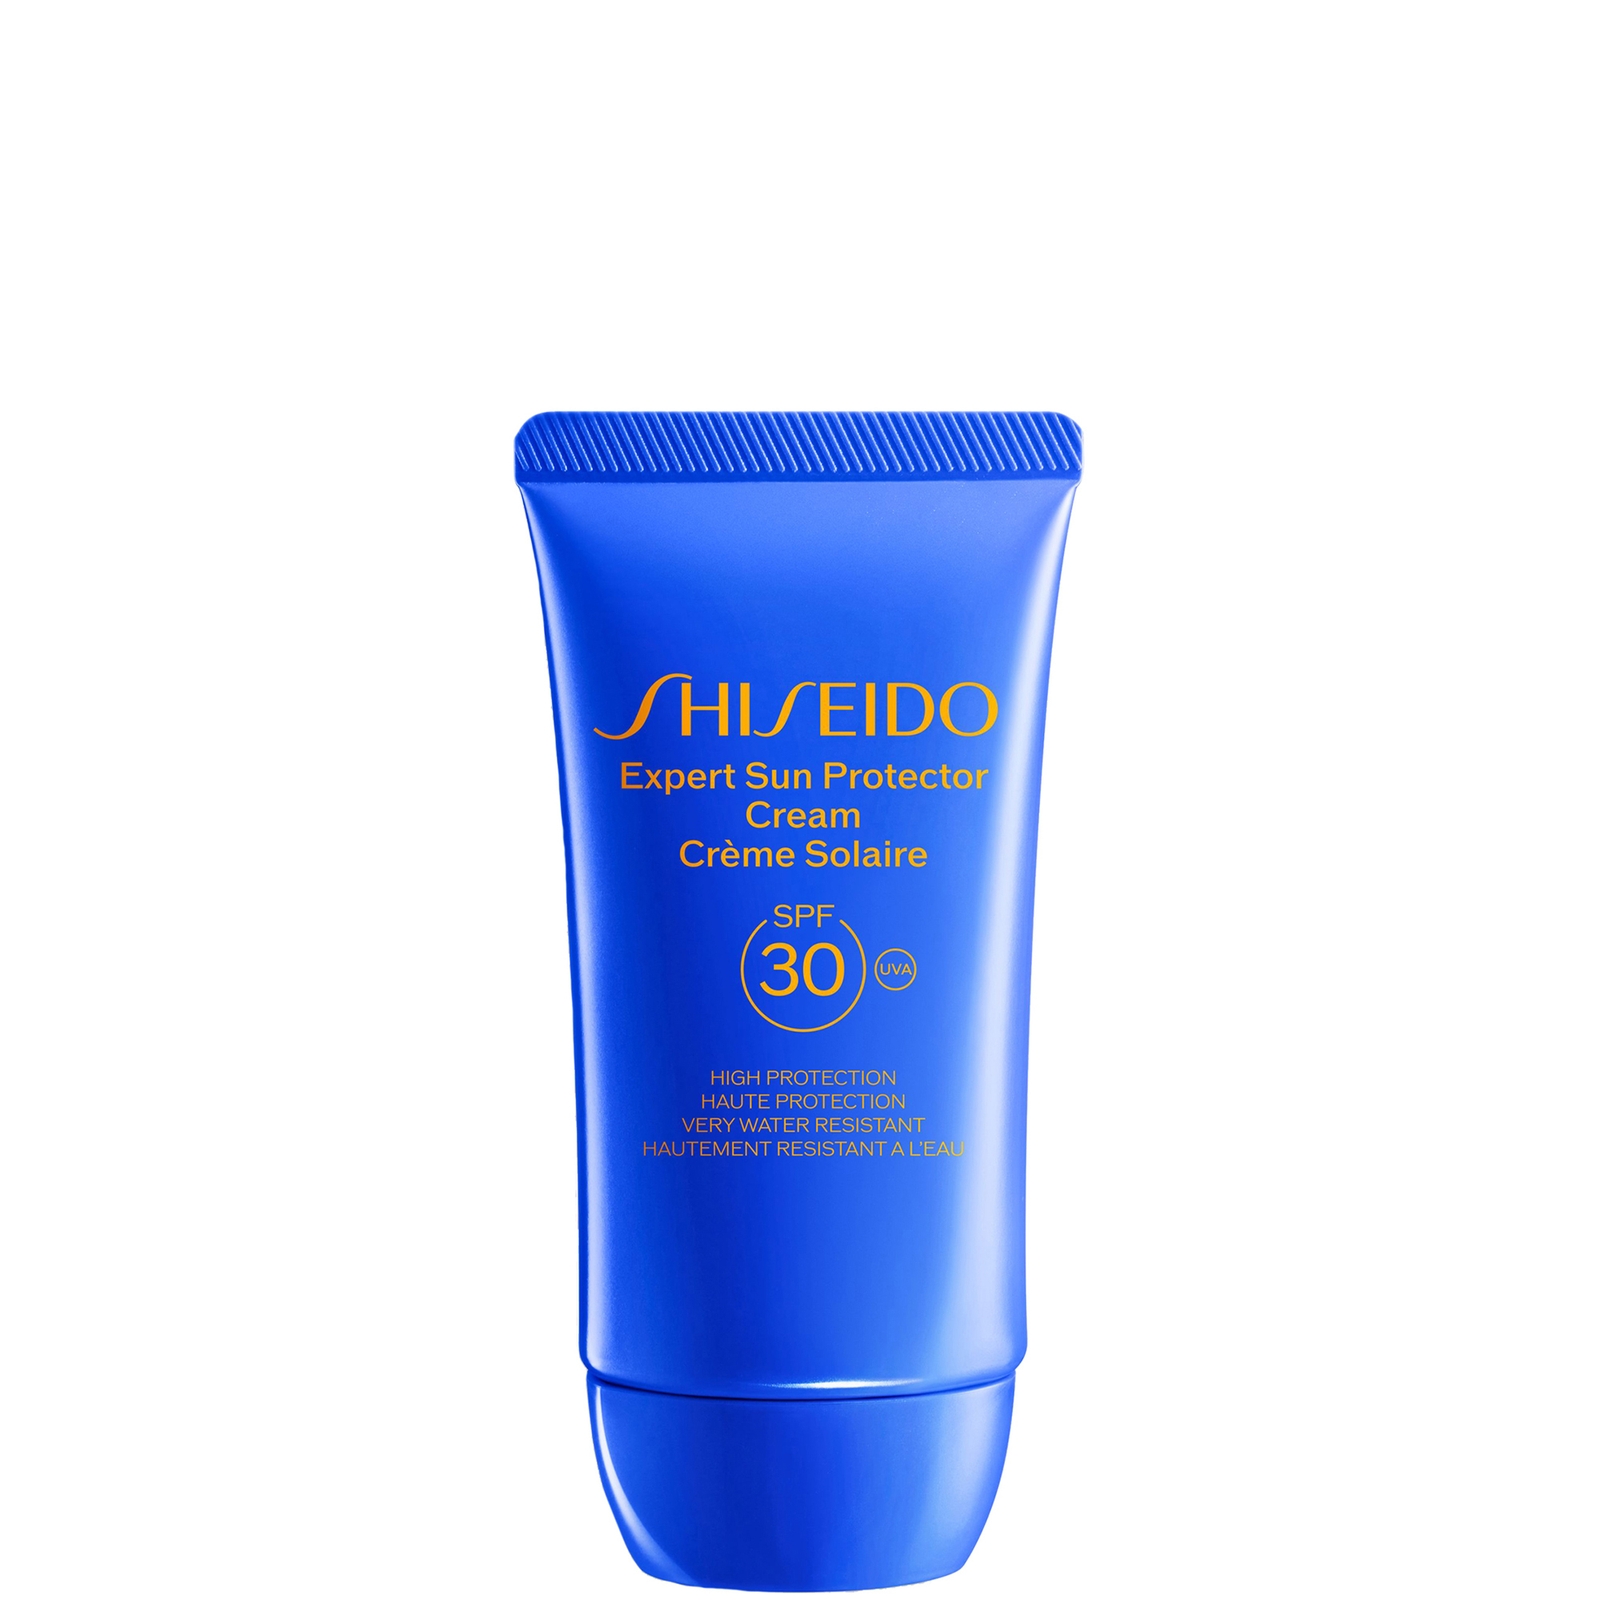 Shiseido Expert Sun Protector SPF30 Face Cream 50ml von Shiseido